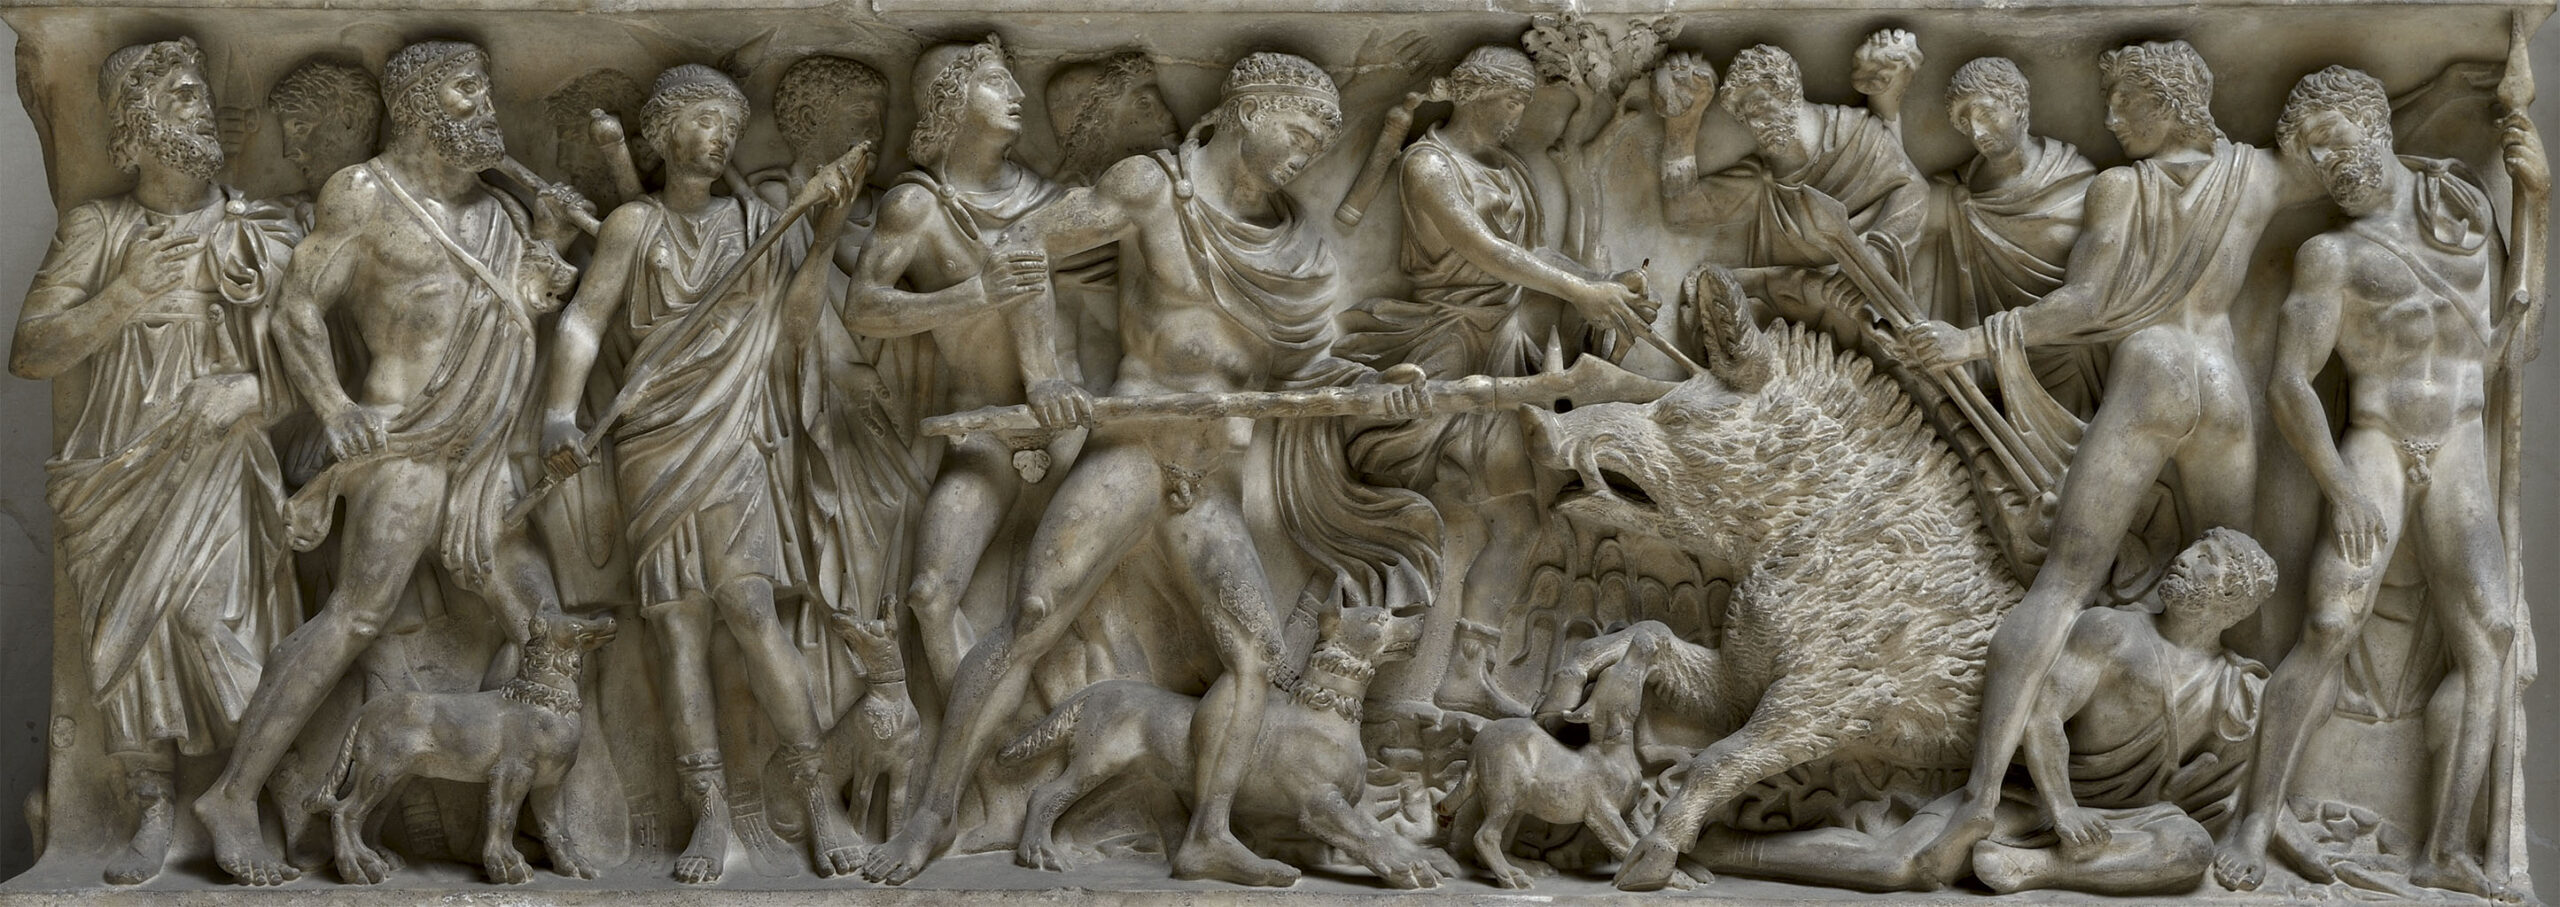 chasse au sanglier de Calydon, 170—180 ap JC, Galerie Doria Pamphili, Rome